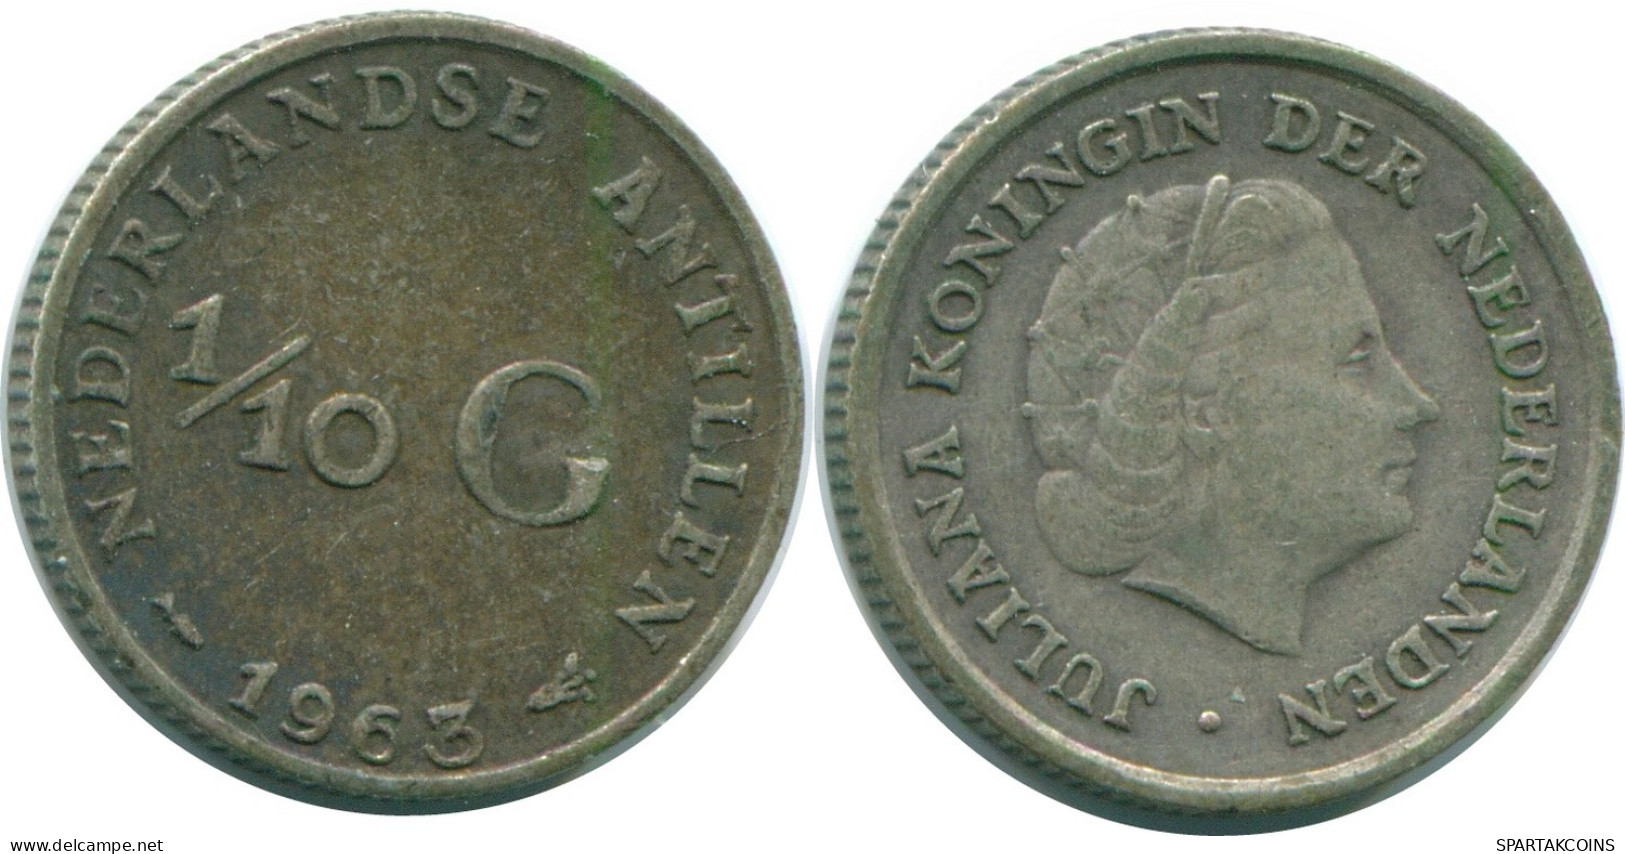 1/10 GULDEN 1963 NIEDERLÄNDISCHE ANTILLEN SILBER Koloniale Münze #NL12504.3.D.A - Antilles Néerlandaises